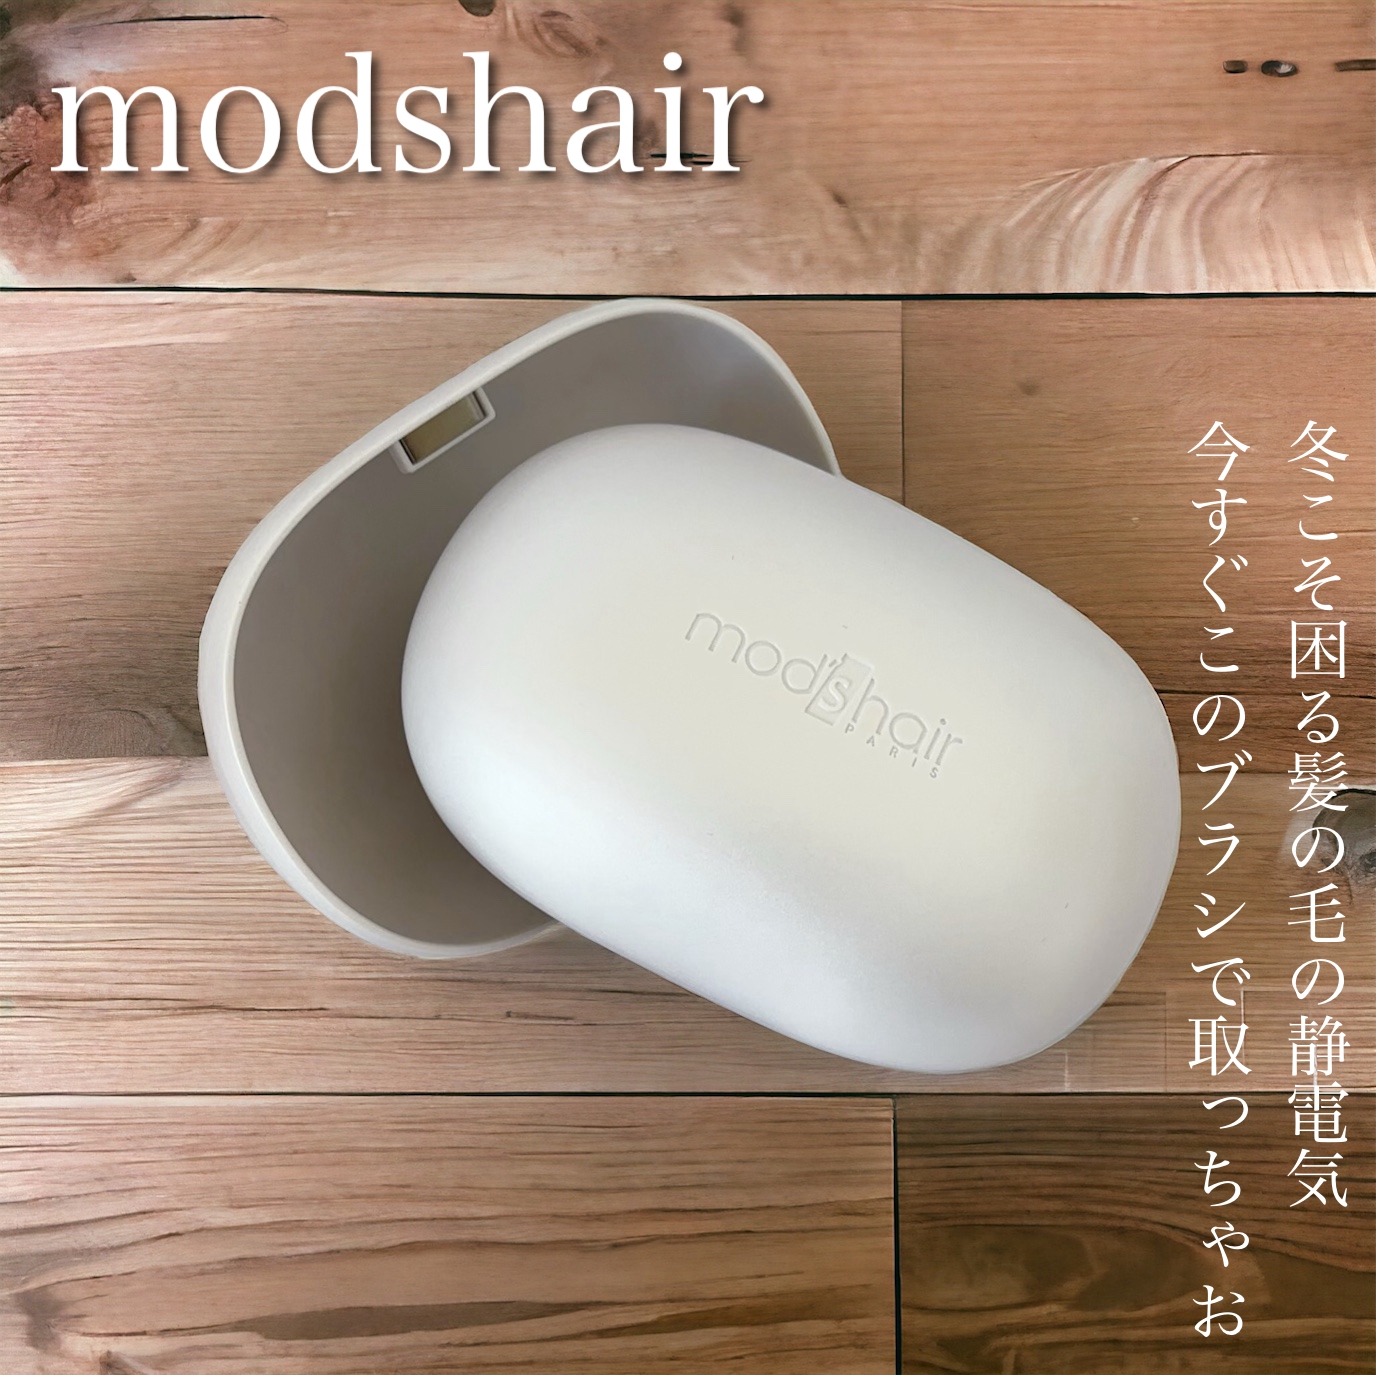 mod’s hair(モッズ・ヘア) スタイリッシュ ベースアップブラシ MHB-3070の良い点・メリットに関するふっきーさんの口コミ画像1